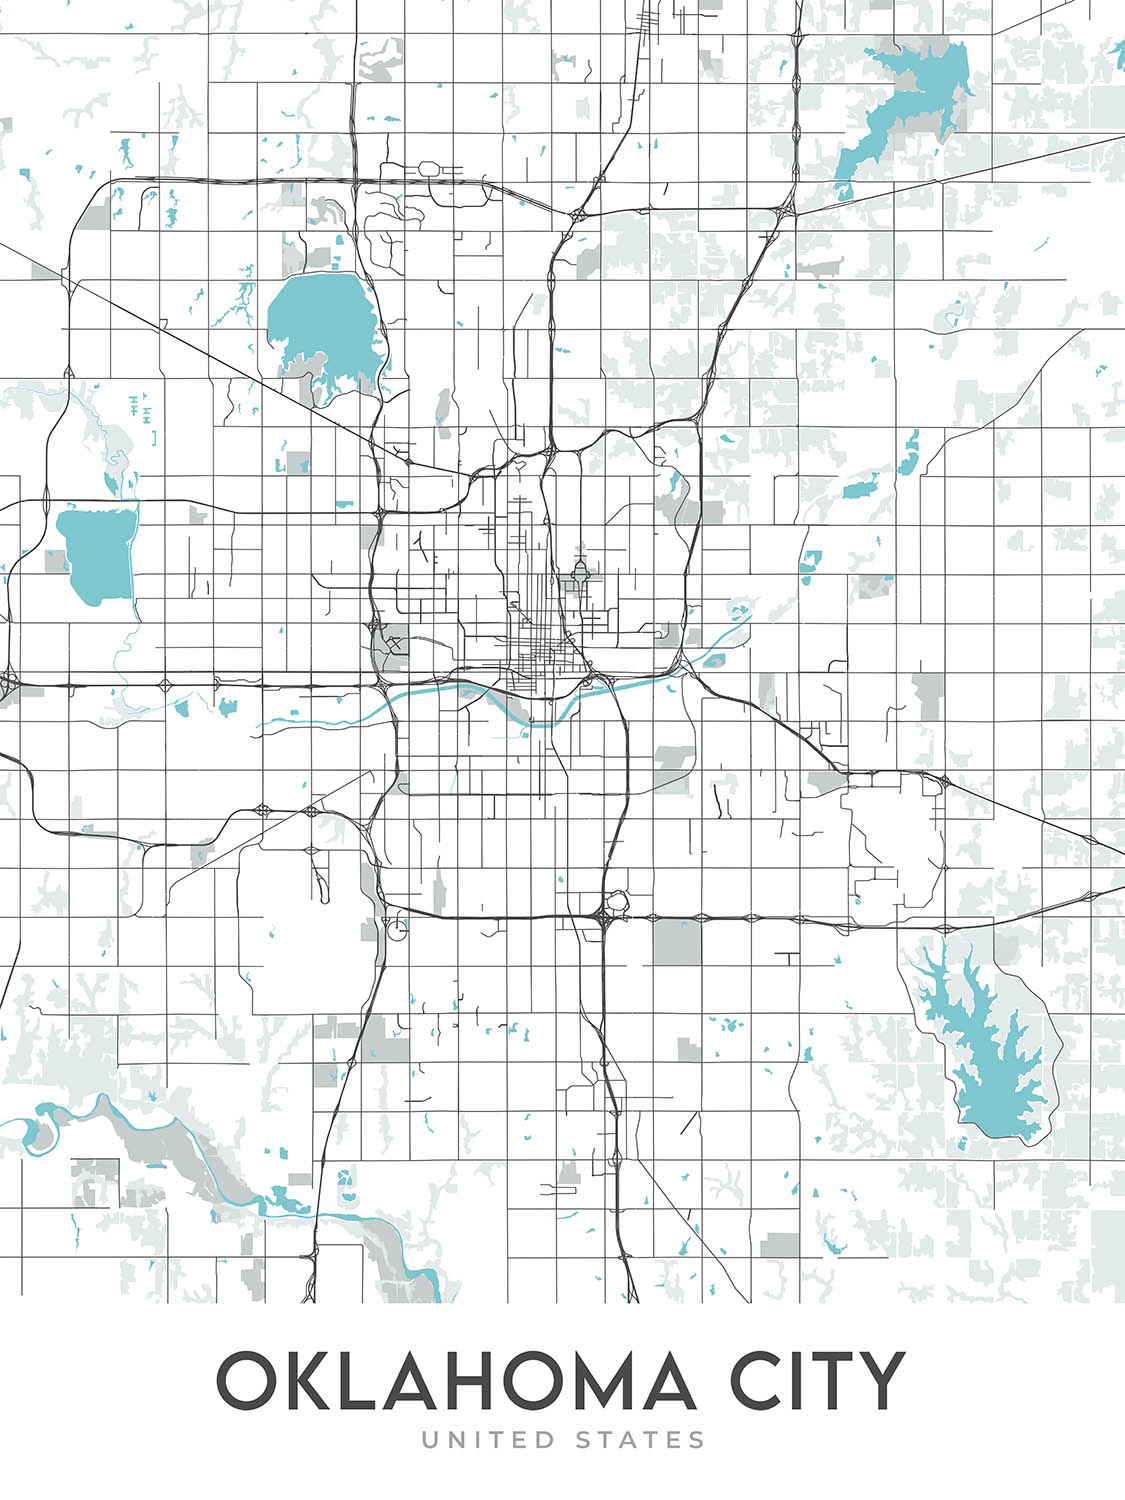 Moderner Stadtplan von Oklahoma City, OK: Innenstadt, Bricktown, Paseo, Midtown, Capitol